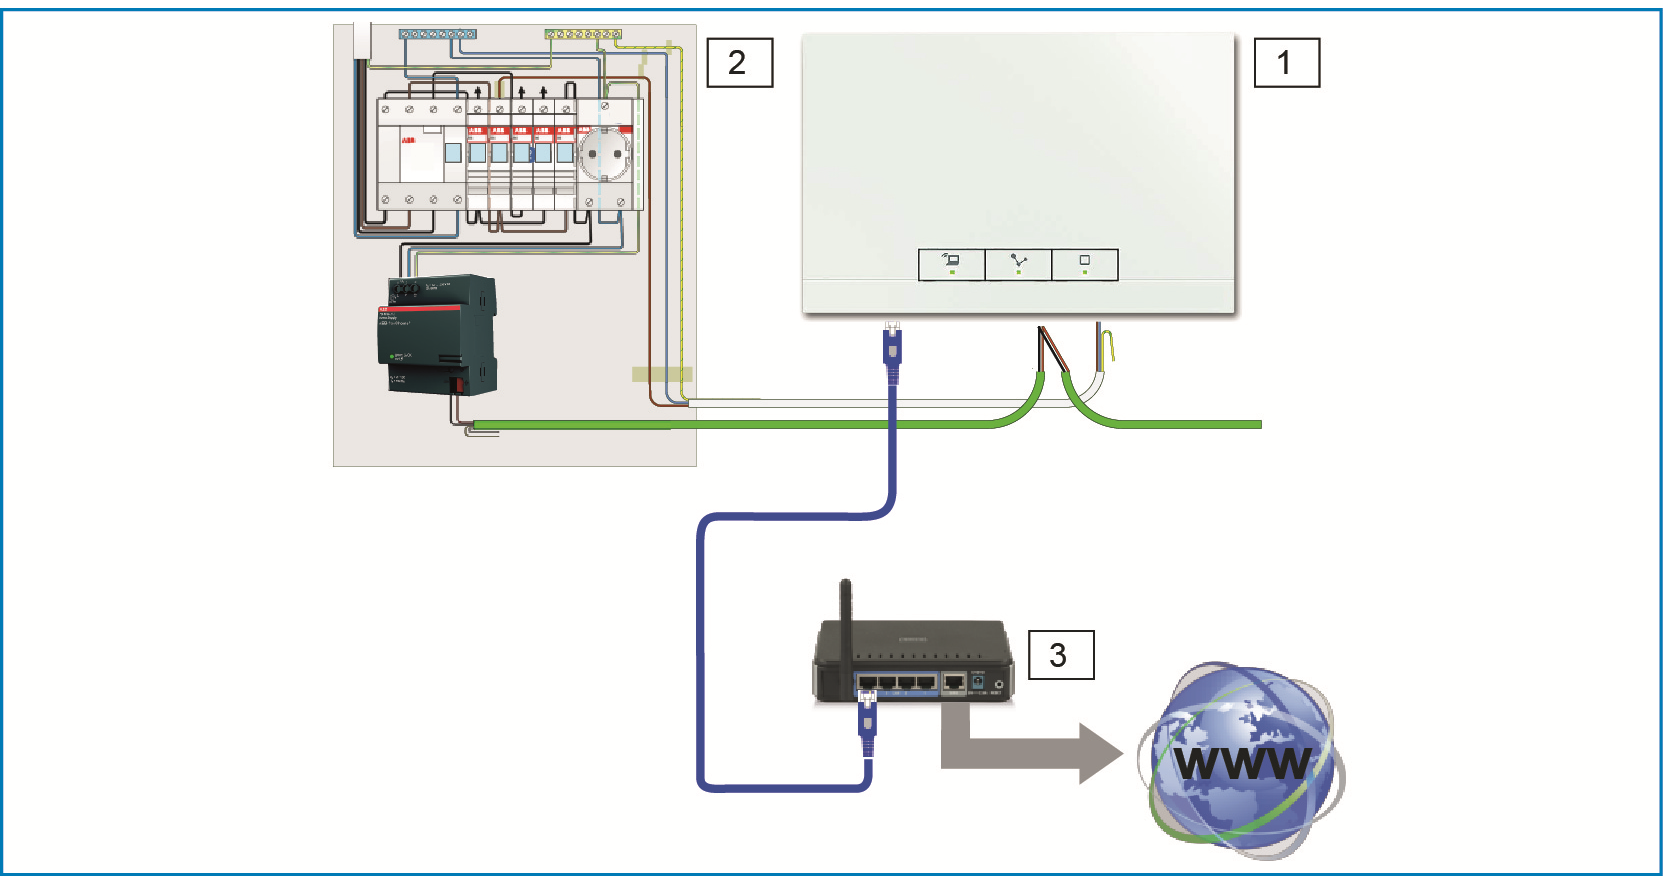 7.2.1 Połączenie za pomocą WLAN Jeśli brak jest możliwości podłączenia System Access Point do routera internetowego przy użyciu kabla, System